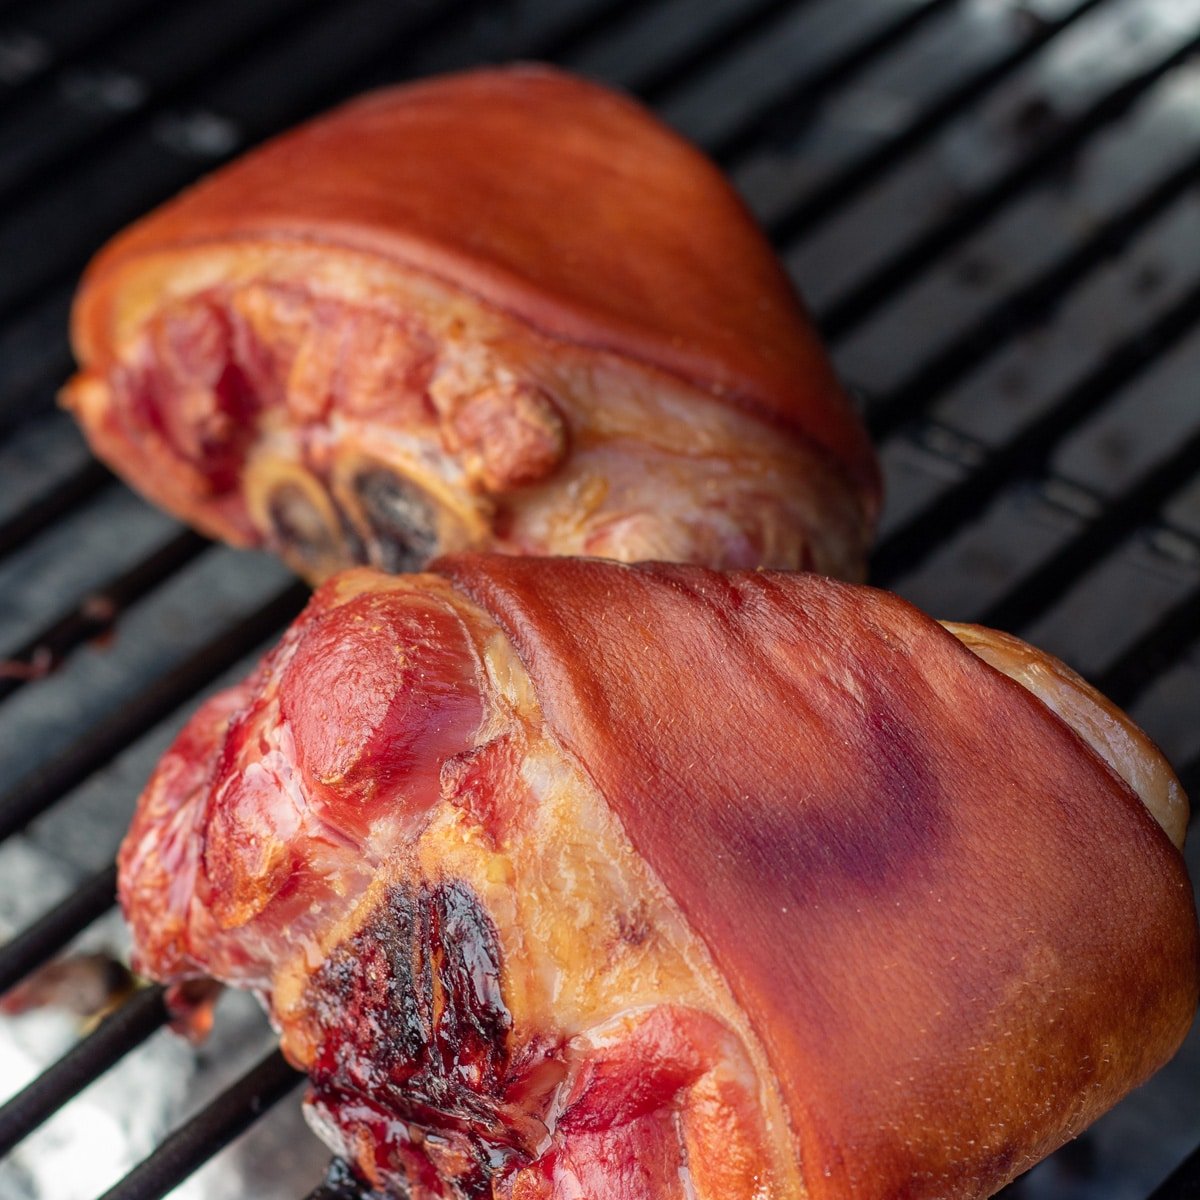 Simply smoked ham hocks shown on the smoker.